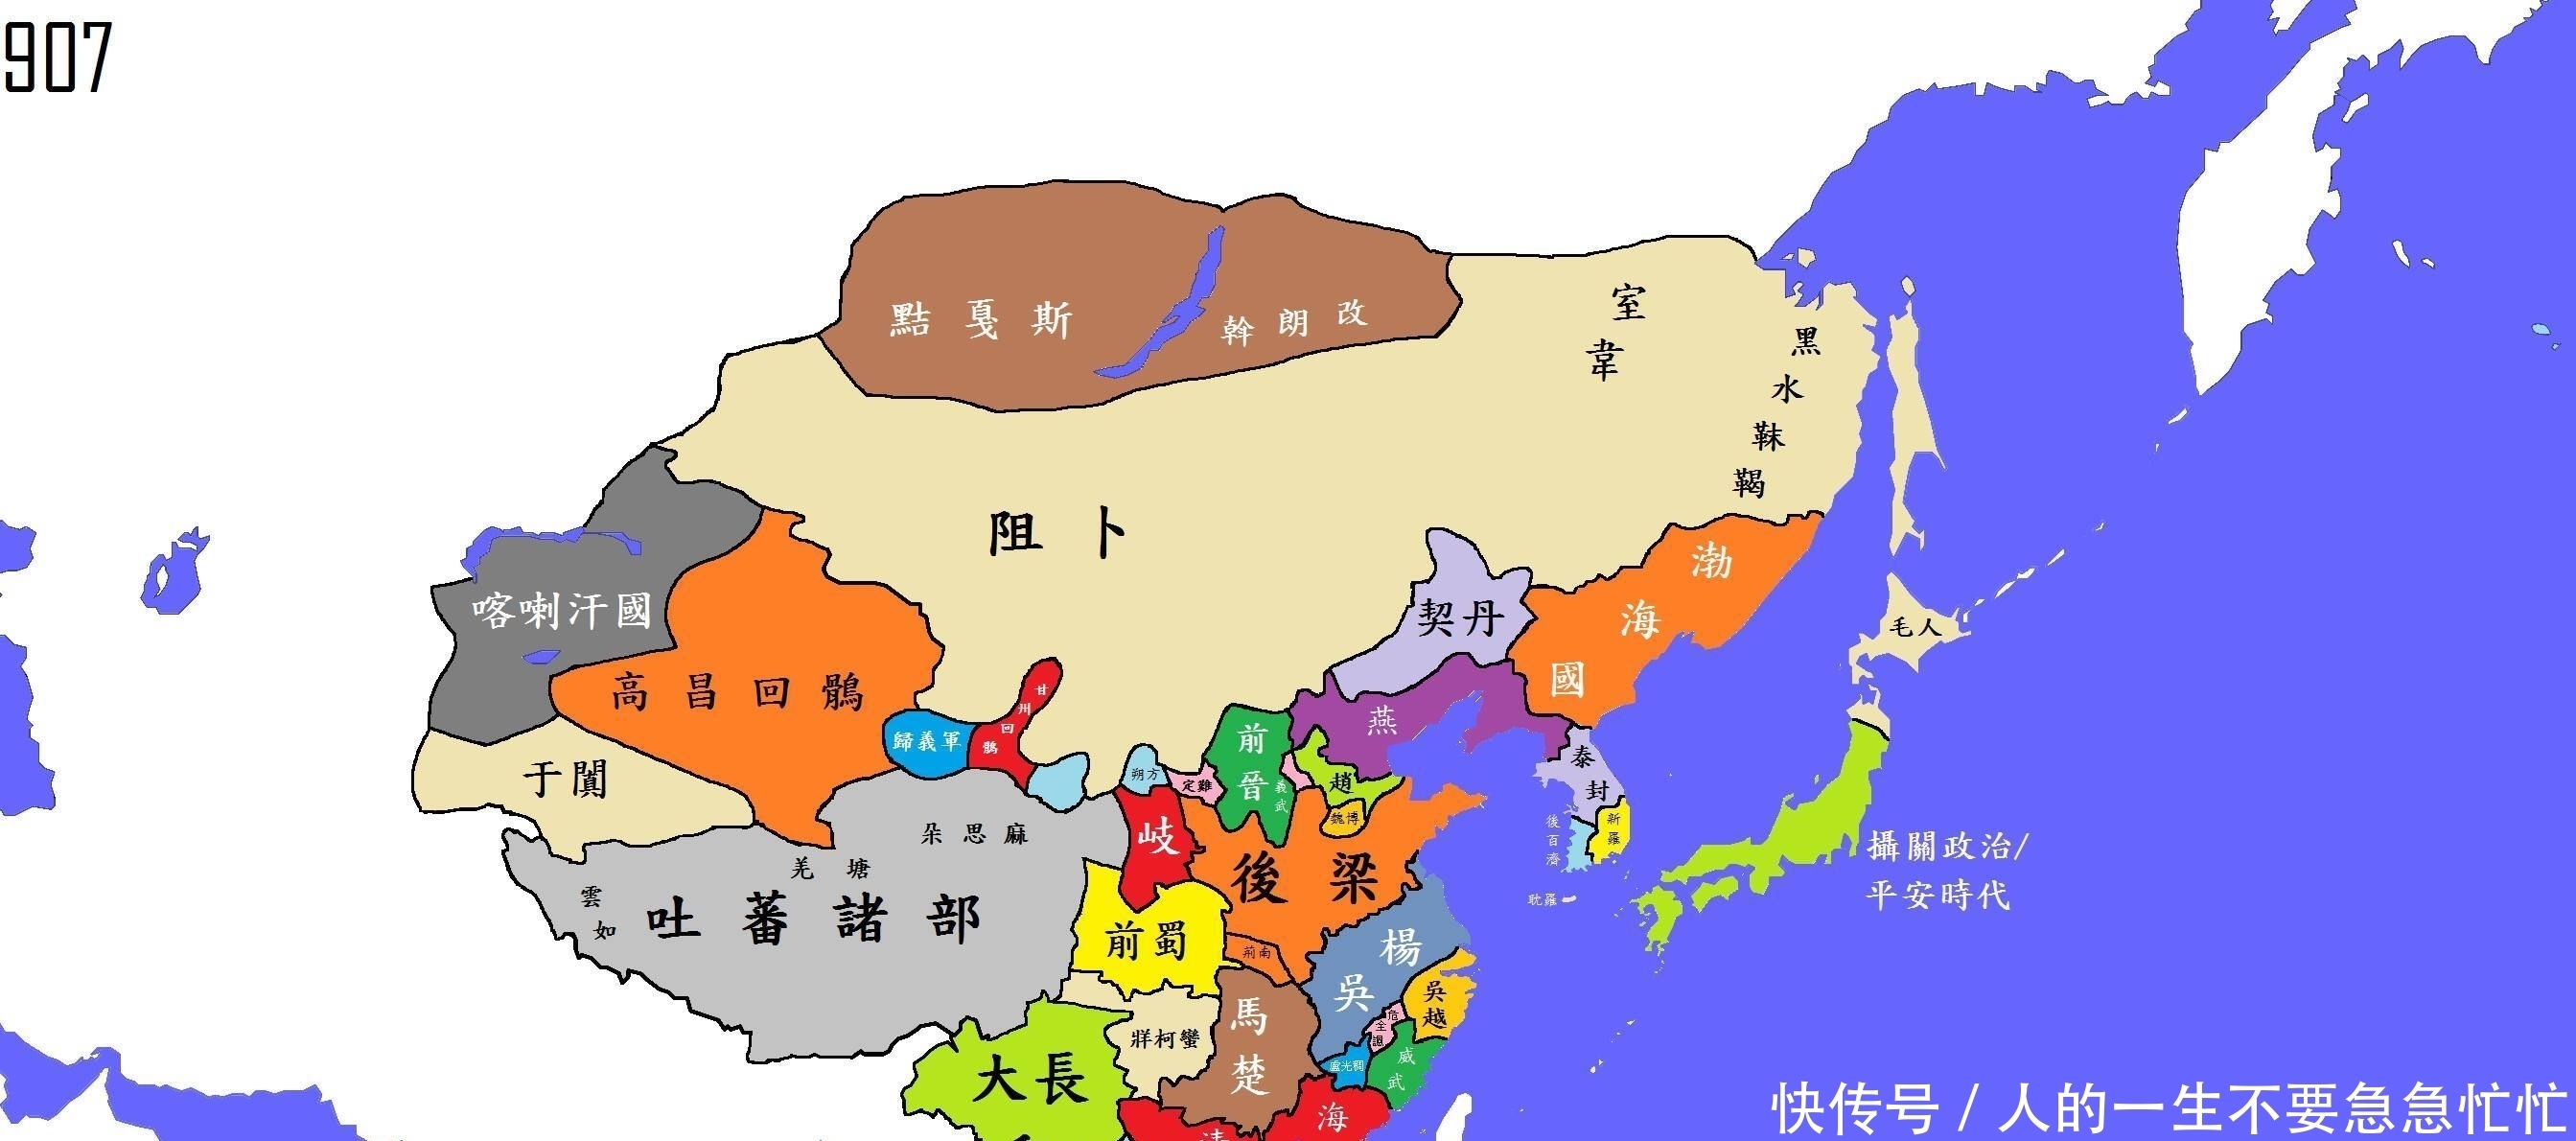 唐朝末年的藩镇割据势力经过一系列争夺最终演变成五代十国